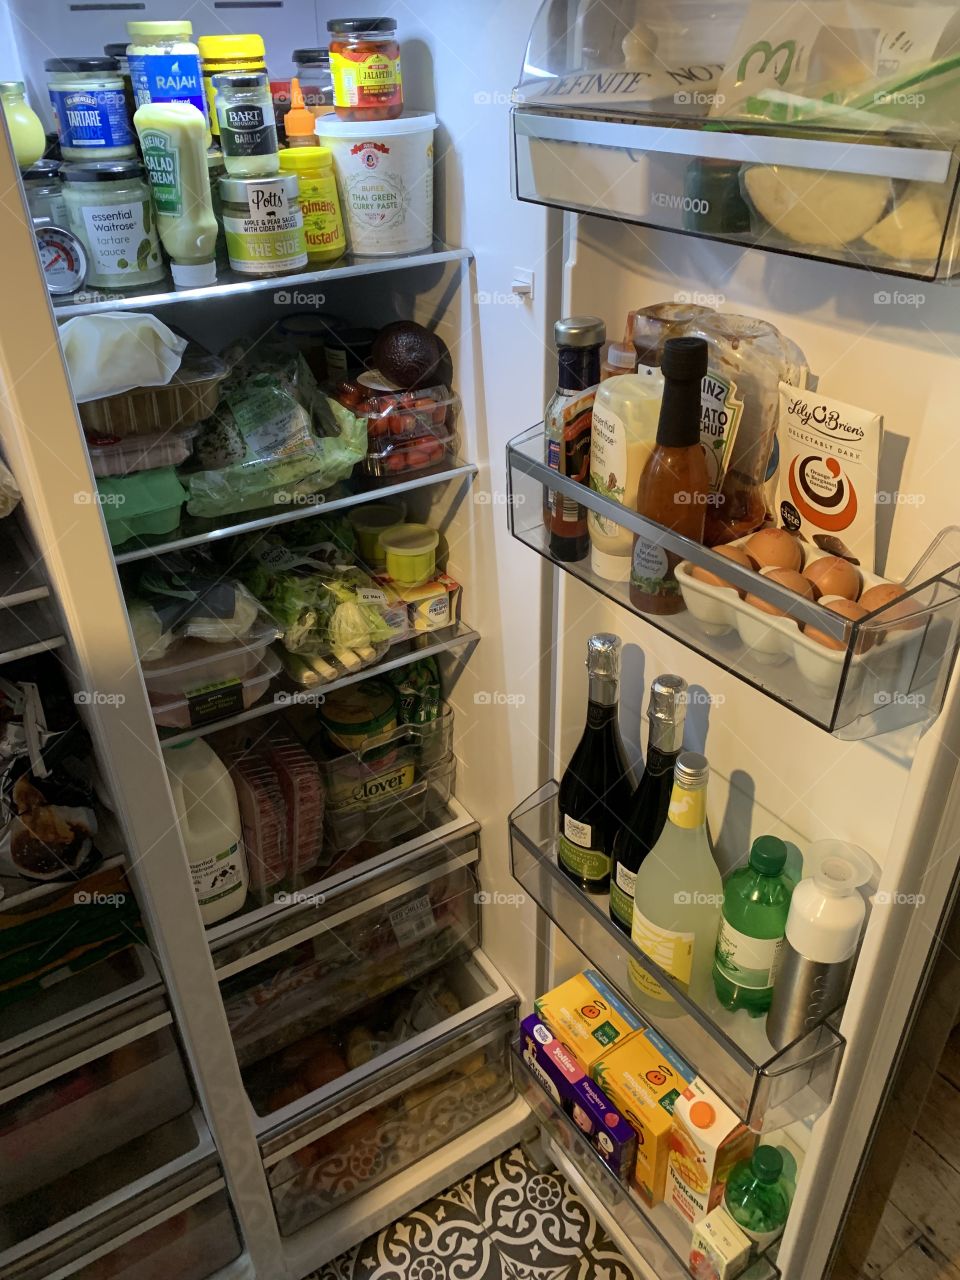 Full fridge freezer